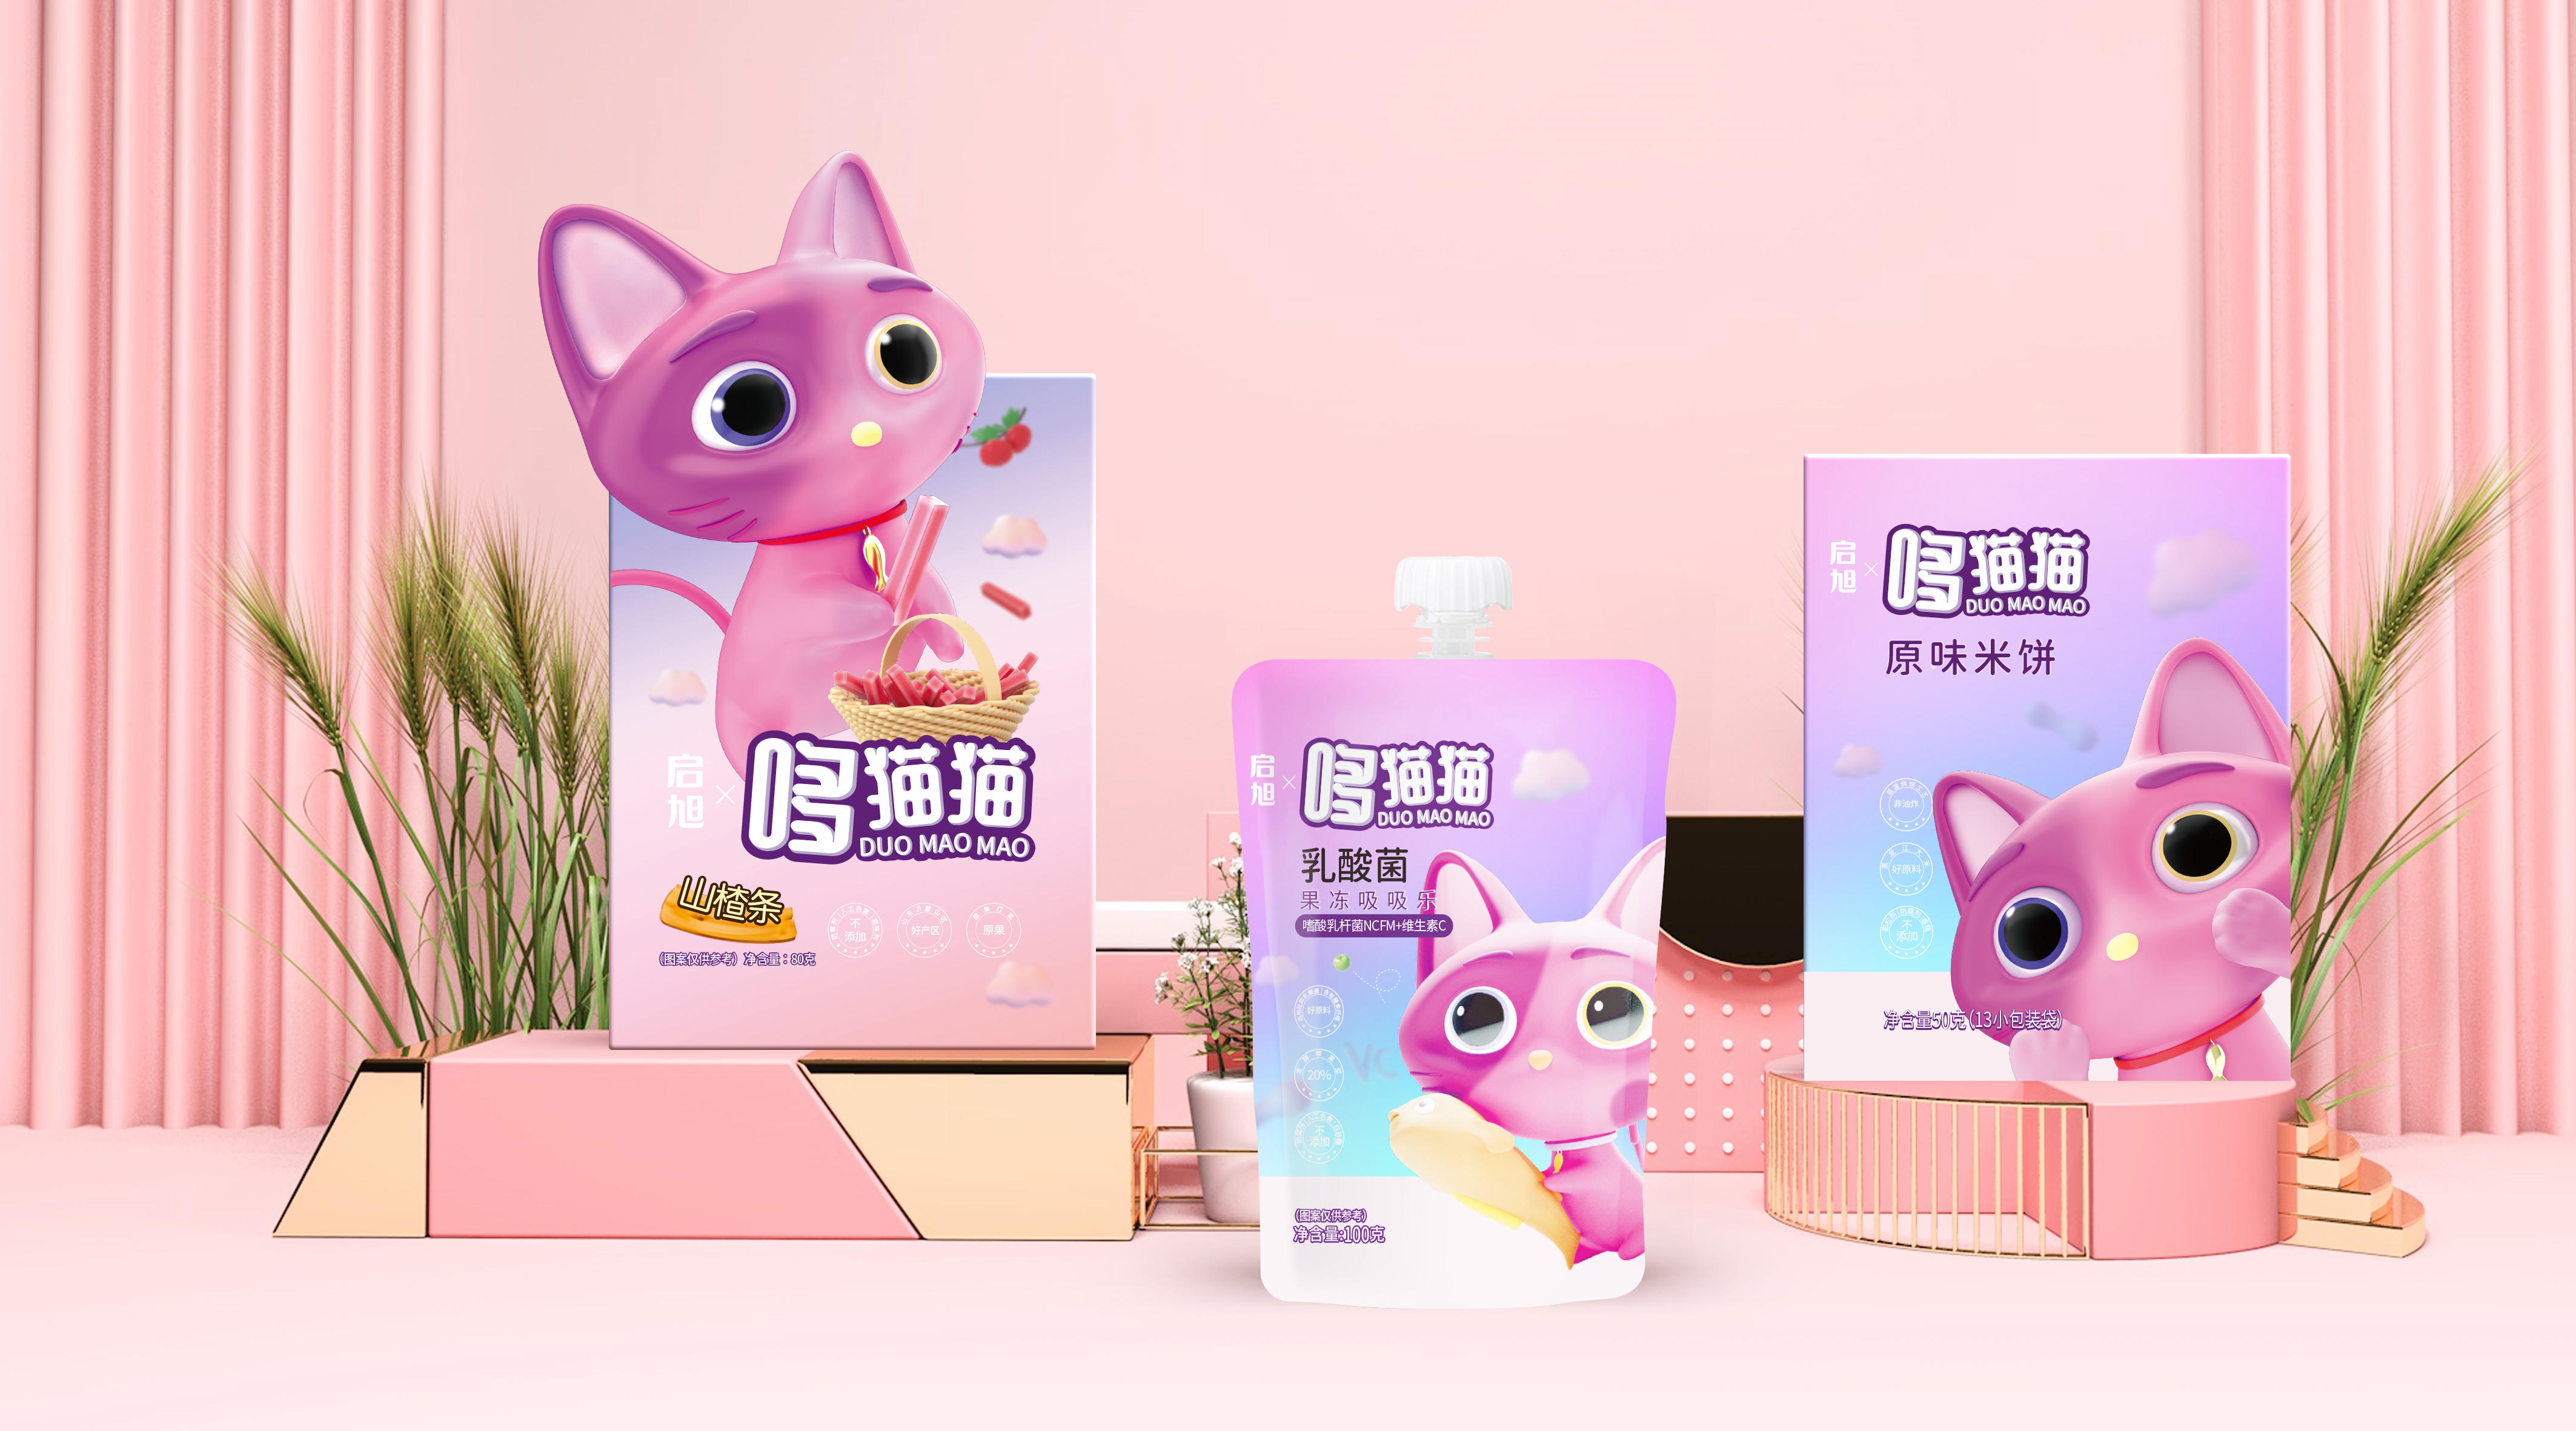 36氪首发 | 新锐儿童食品品牌「启旭哆猫猫」获数百万美元天使轮融资，SIG独家投资